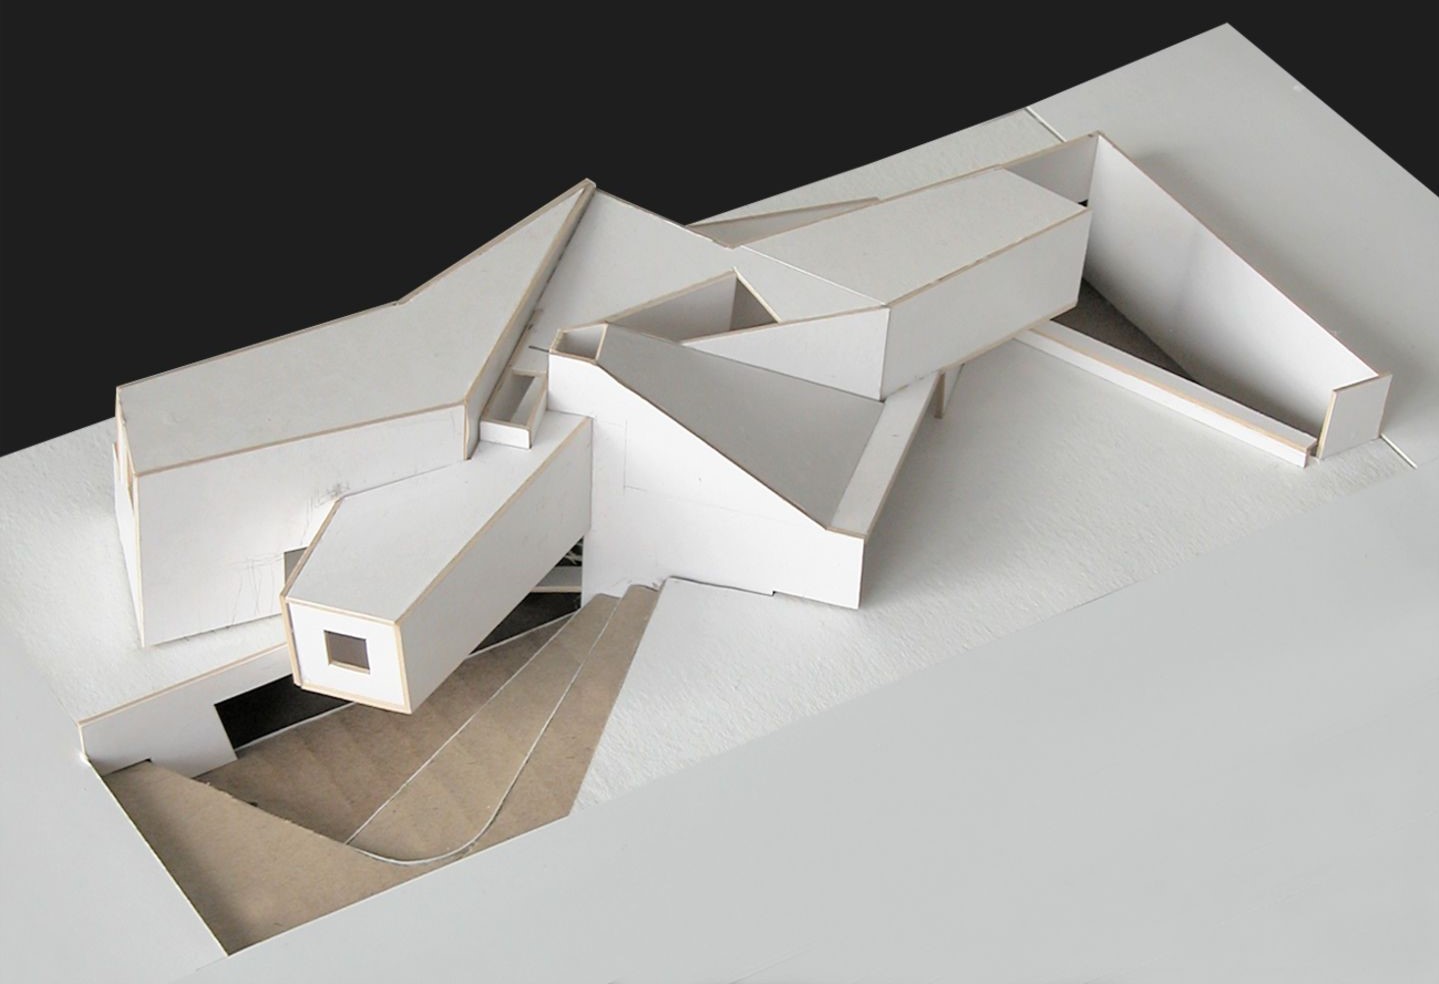 Kinh nghiệm làm mô hình kiến trúc cho sinh viên  mohinhliticom